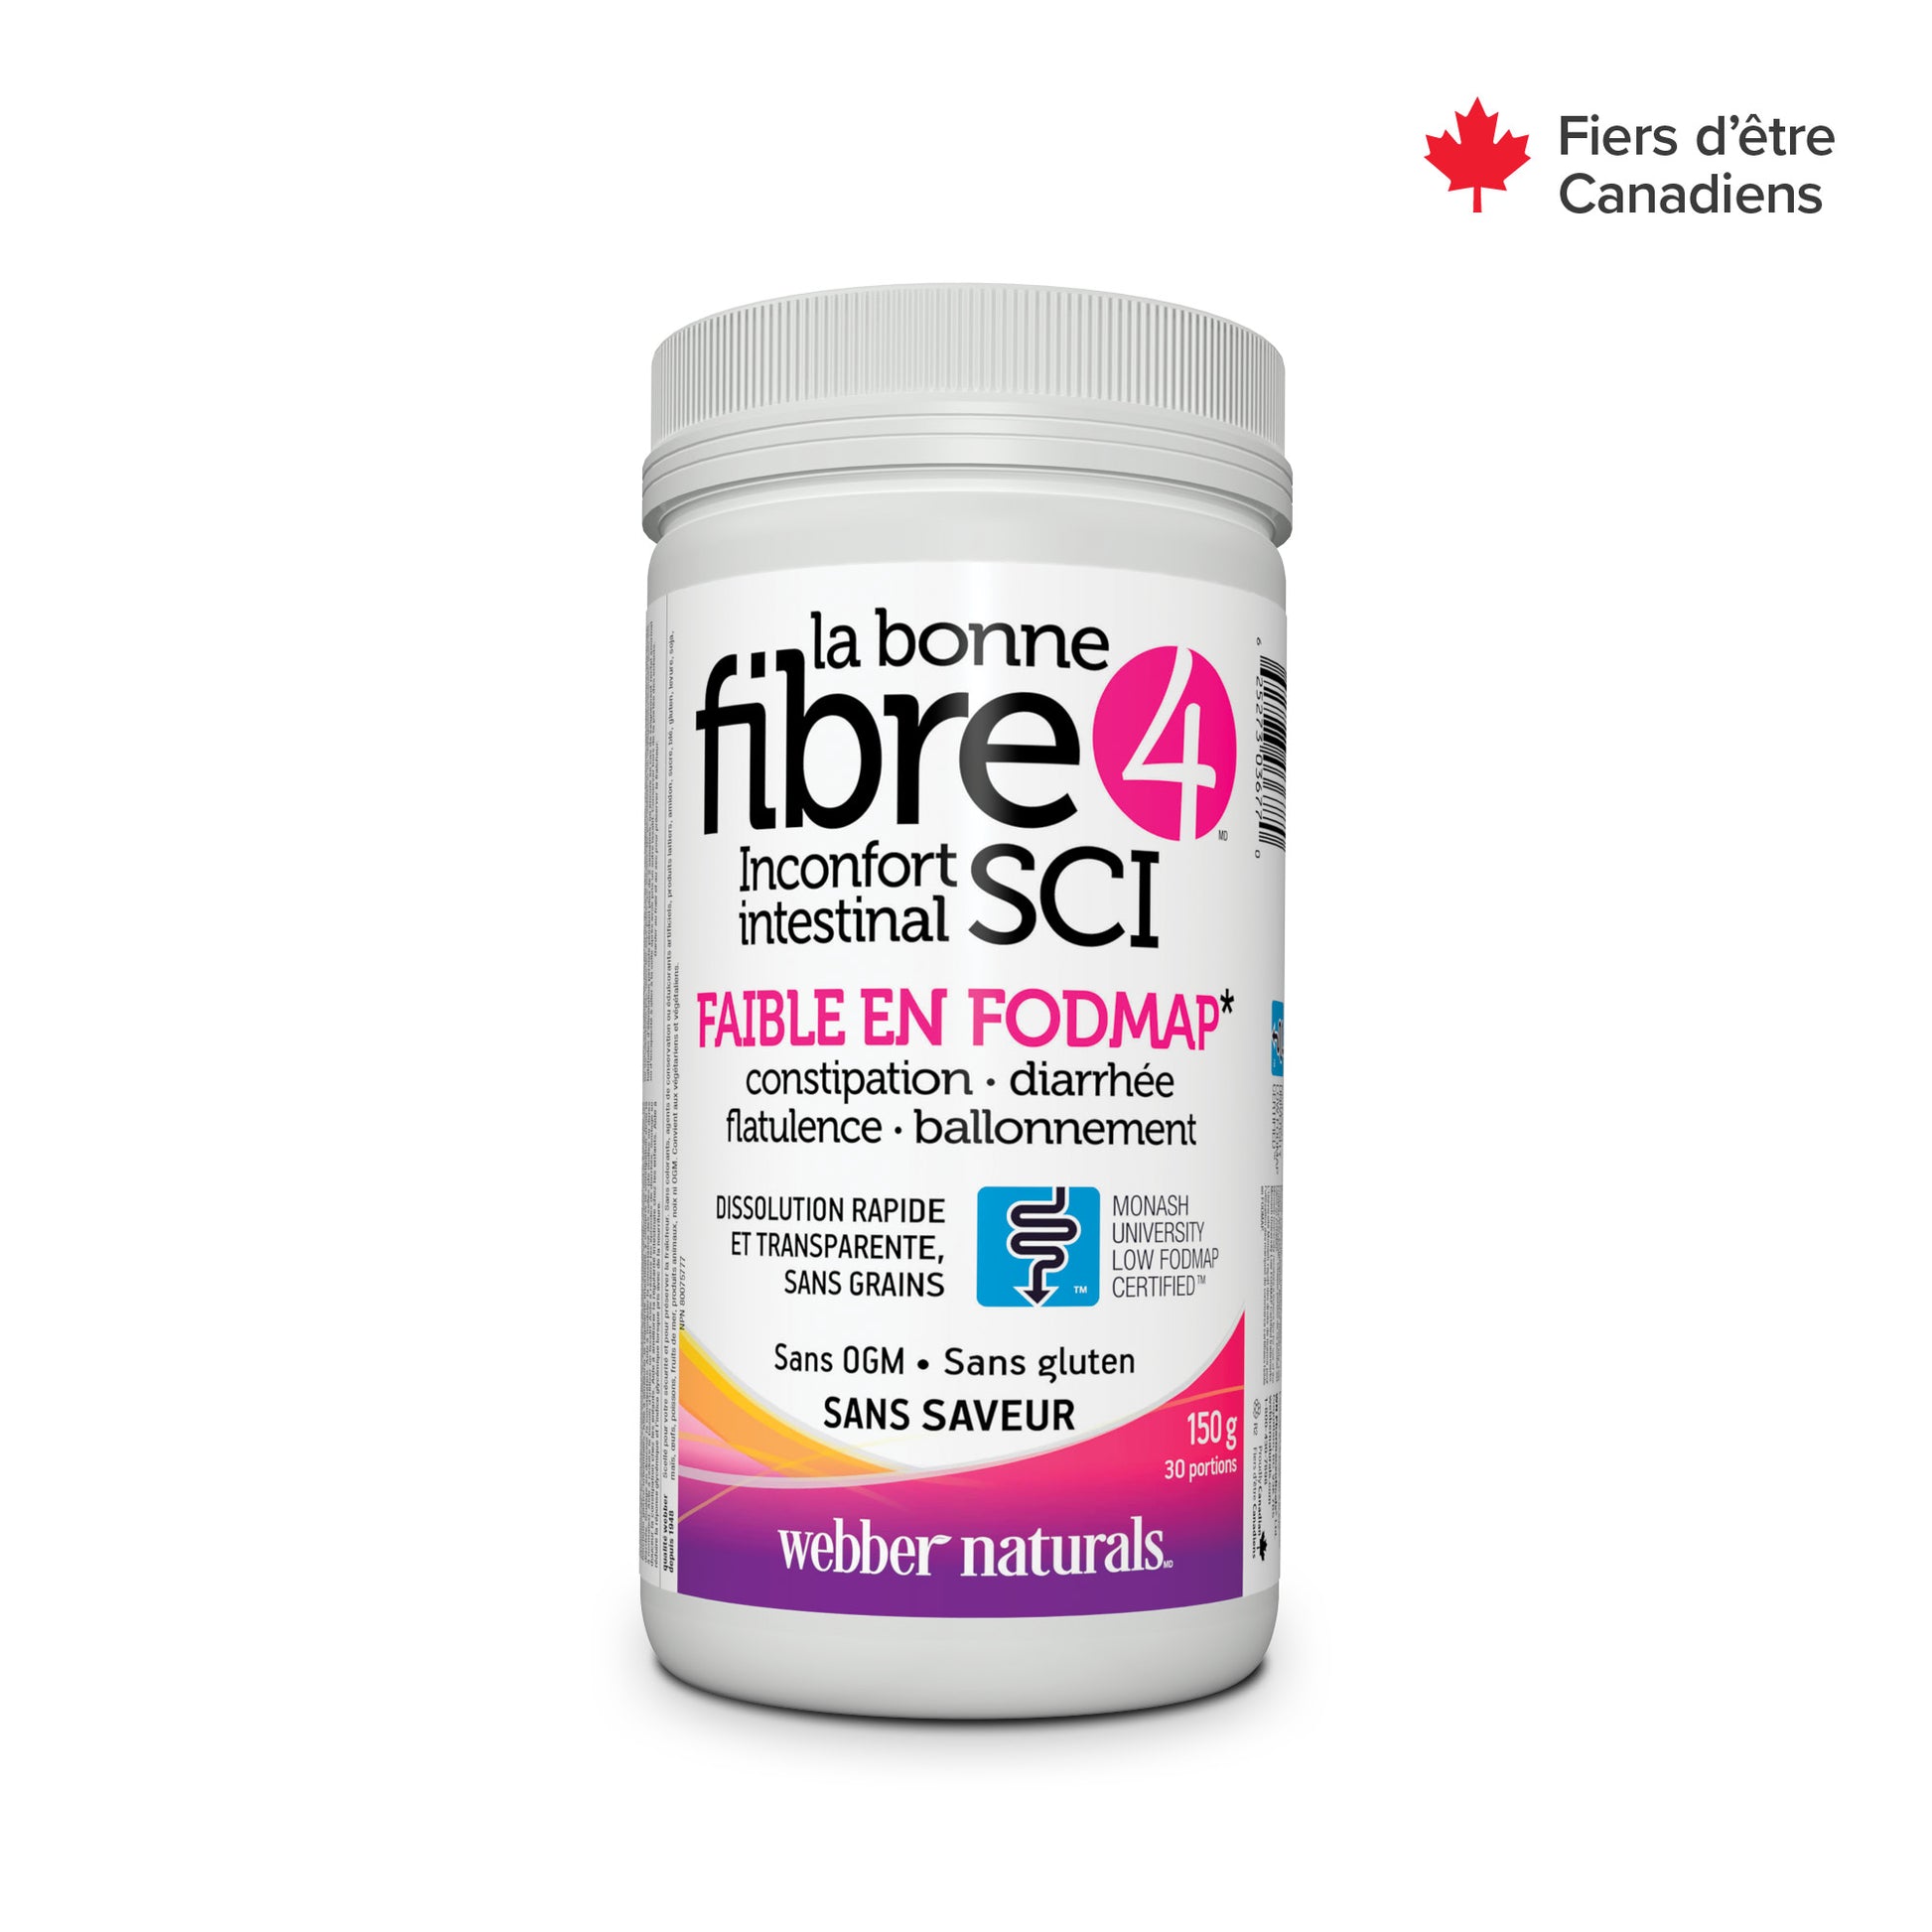 La bonne fibre4(MD) sans saveur for Webber Naturals|v|hi-res|WN3677